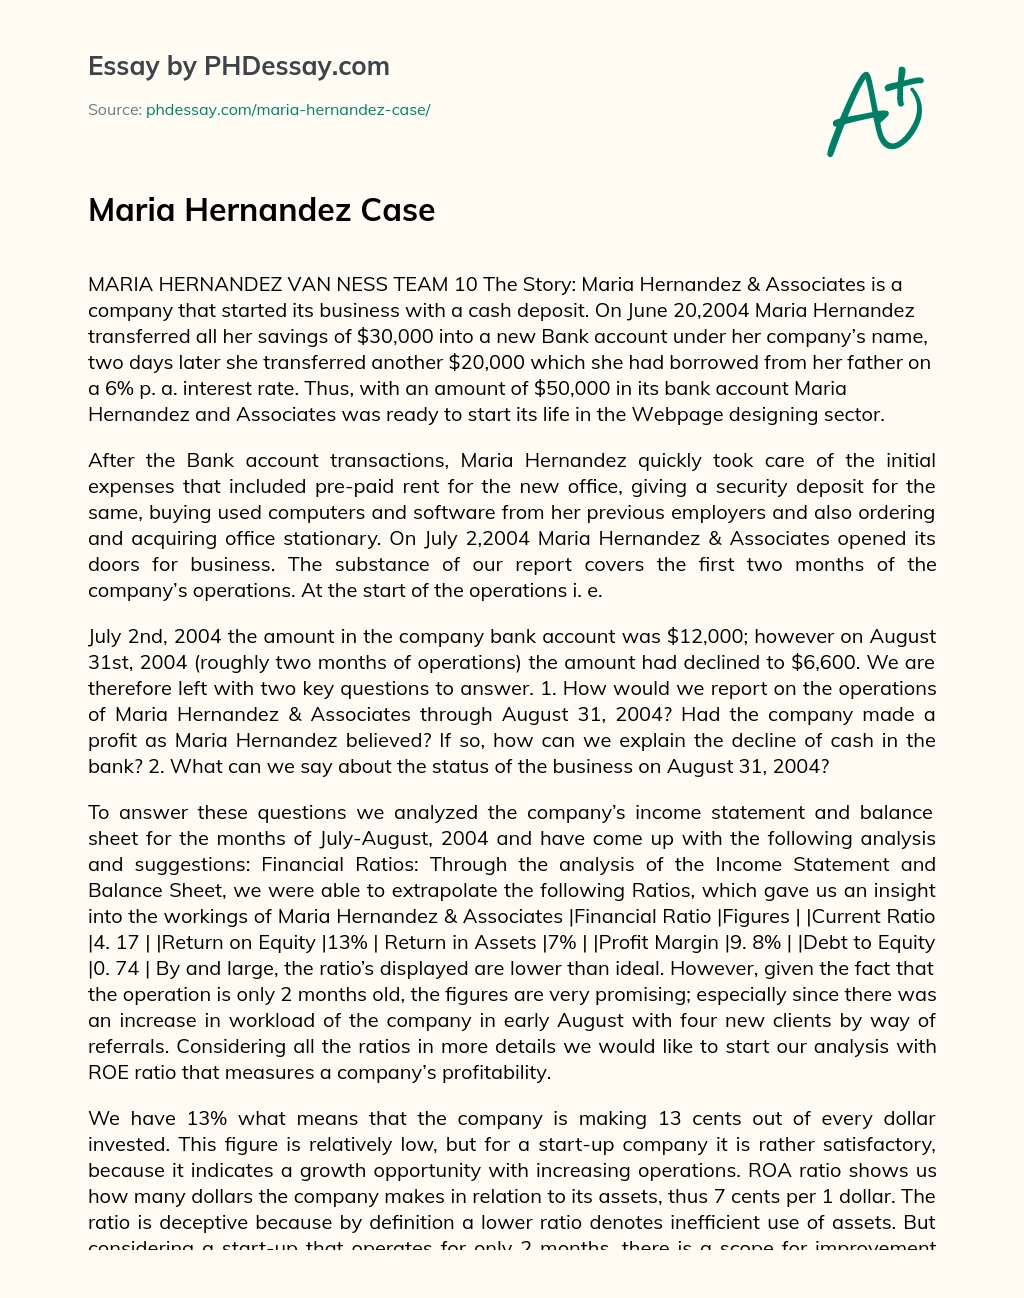 Maria Hernandez Case essay